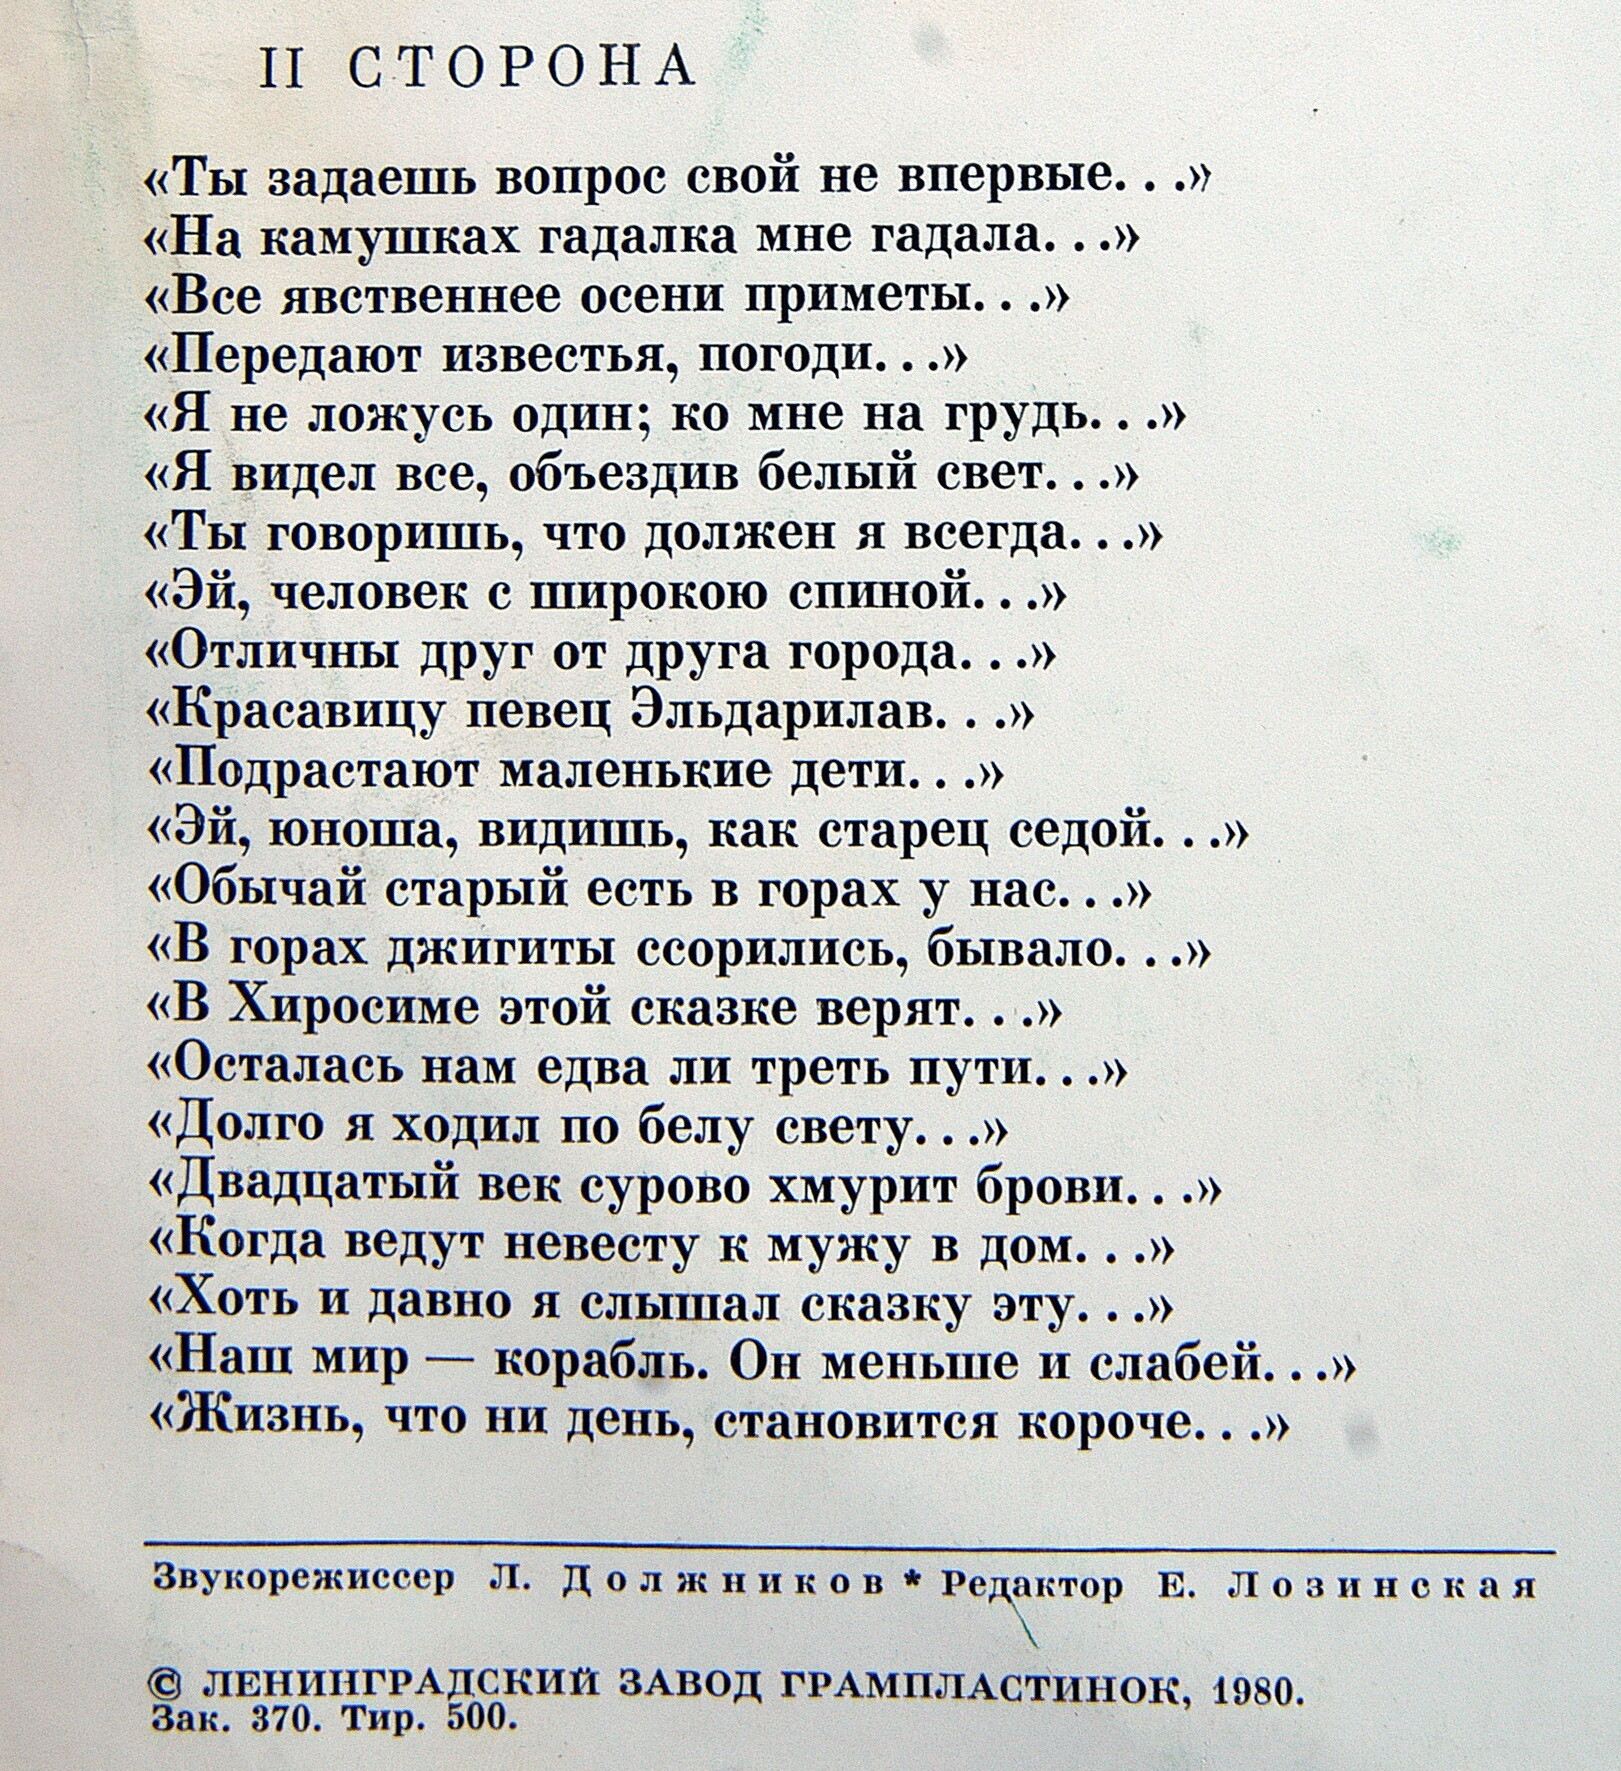 Р. ГАМЗАТОВ (1923): Сонеты и восьмистишия (переводы Н. Гребнева). М. Ульянов